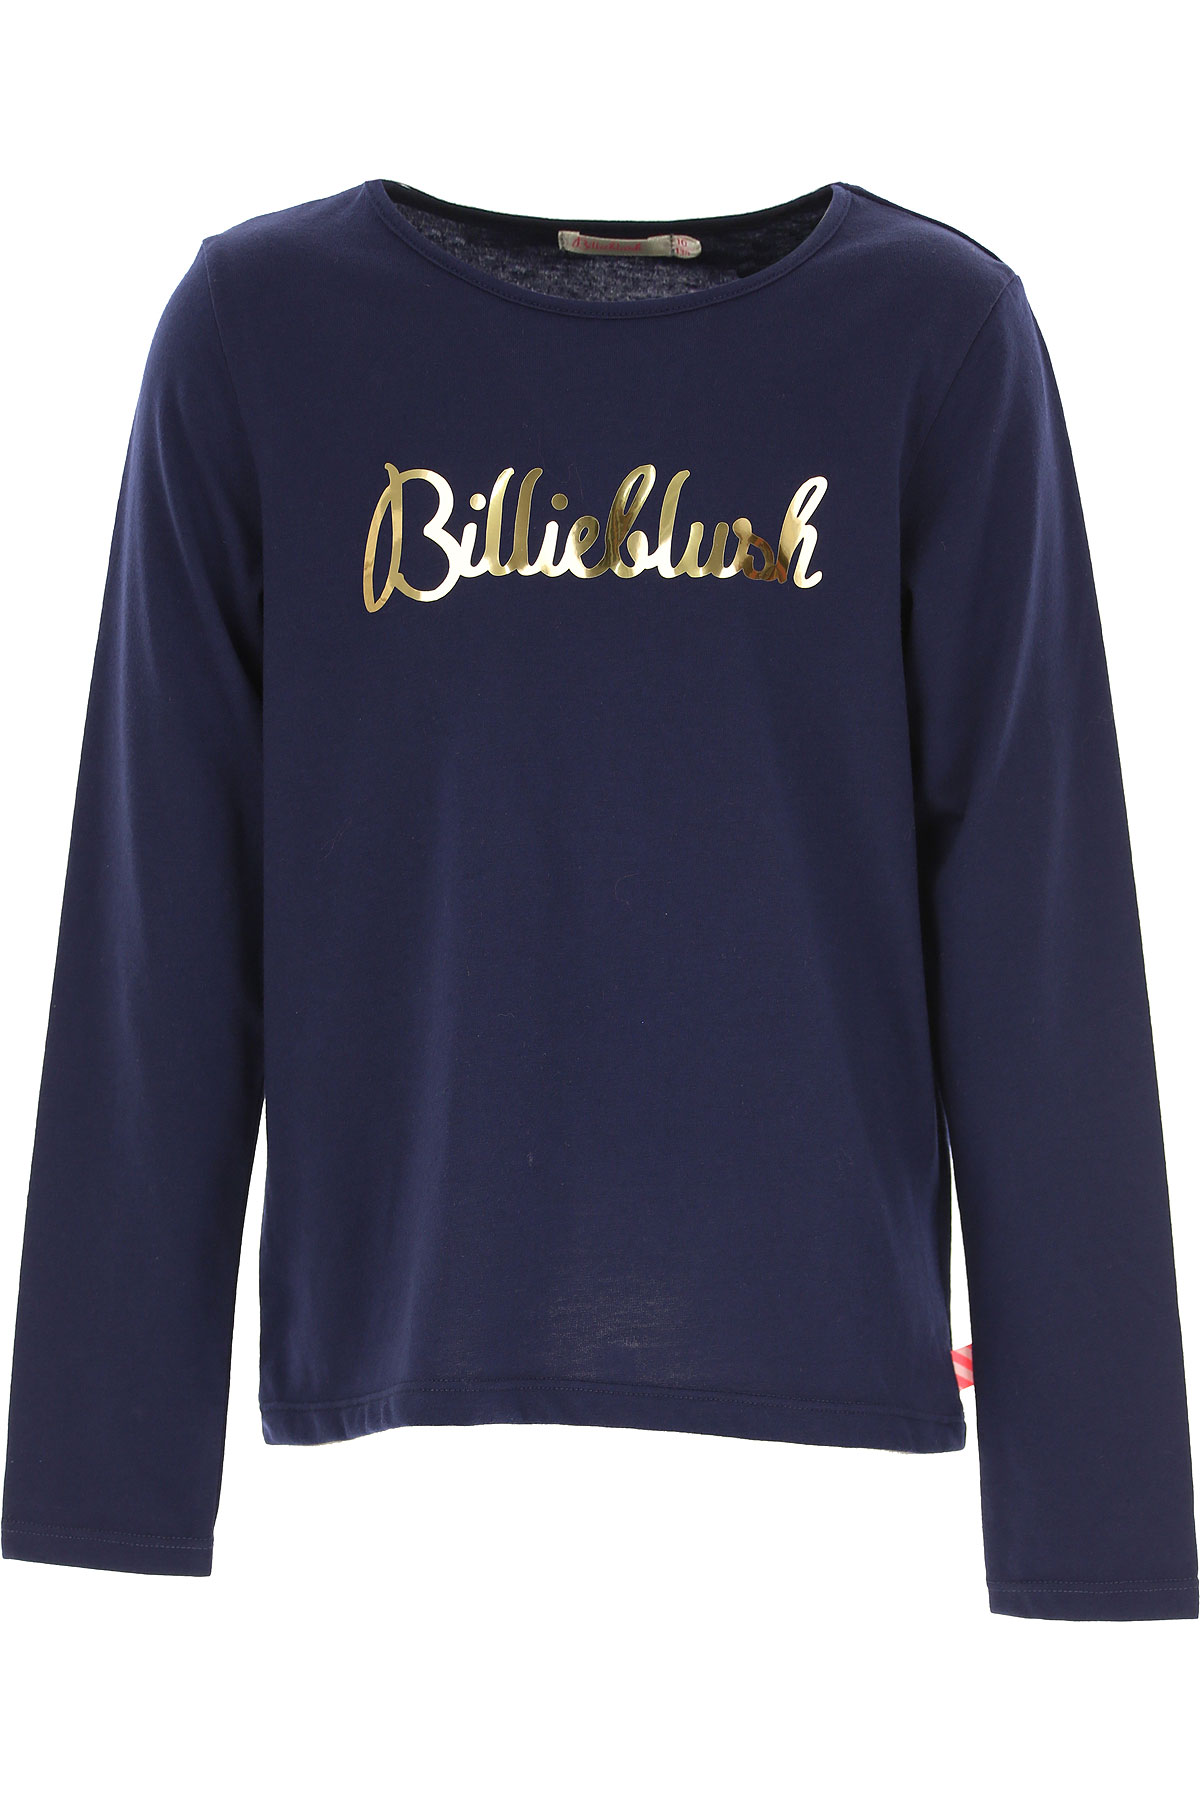 Billieblush Kinder T-Shirt für Mädchen Günstig im Sale, Marine blau, Polyester, 2017, 12Y 2Y 3Y 4Y 6Y 8Y